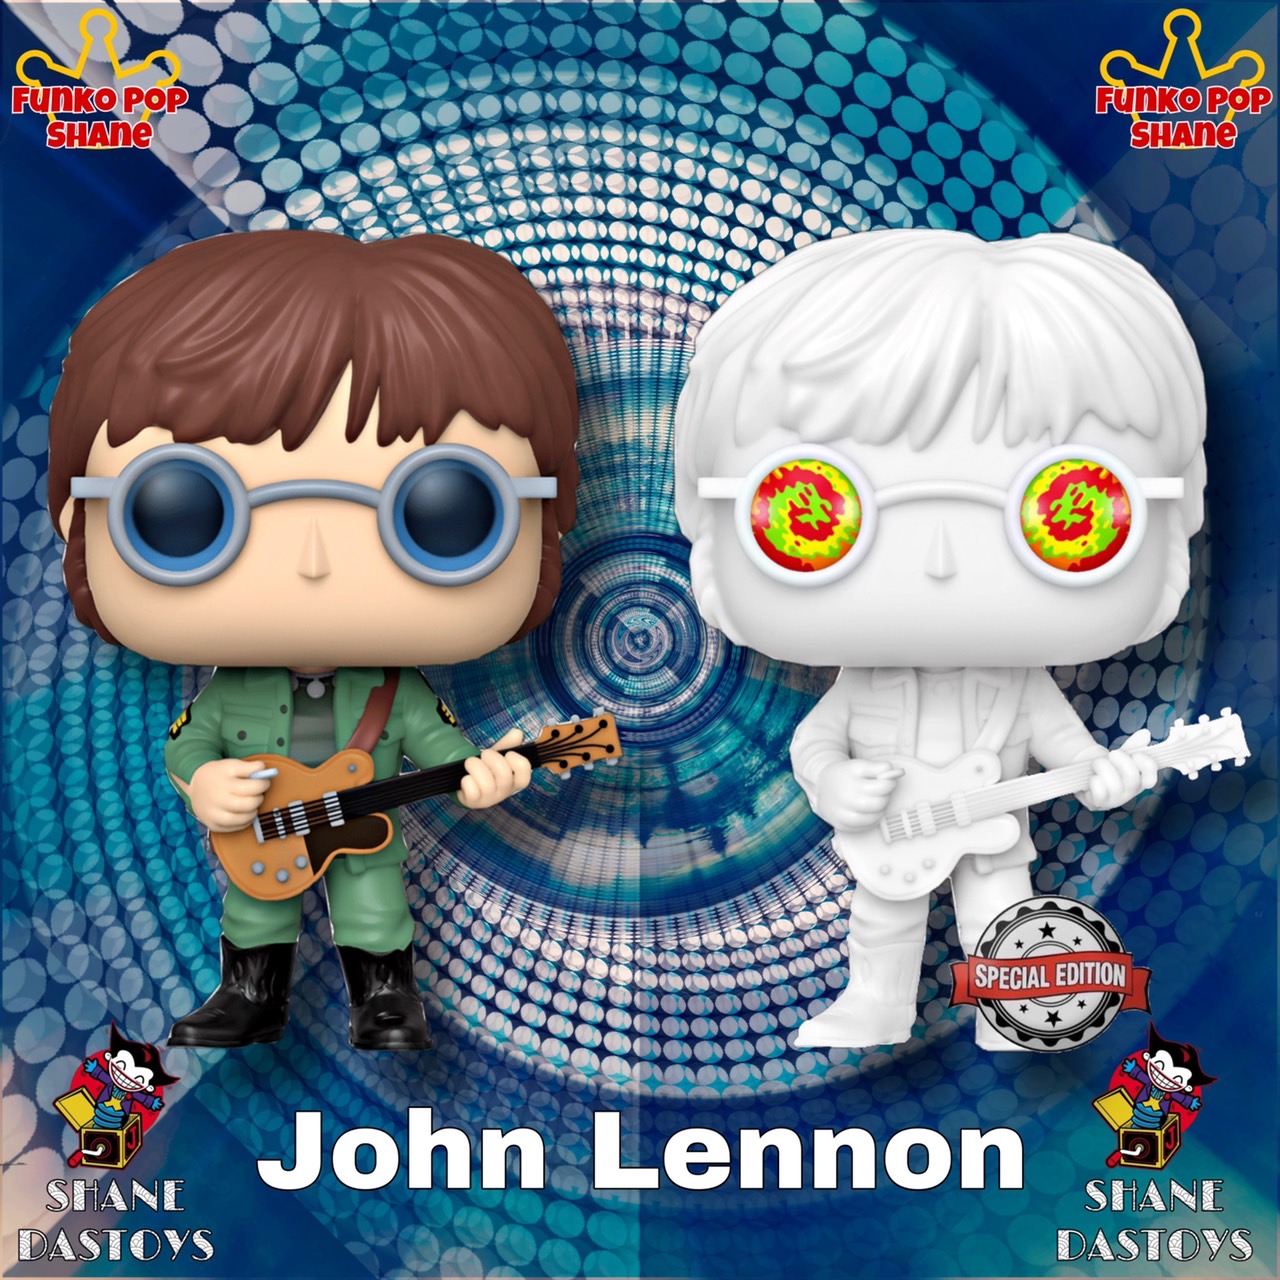 Funko Pop! ROCKS : John Lennon